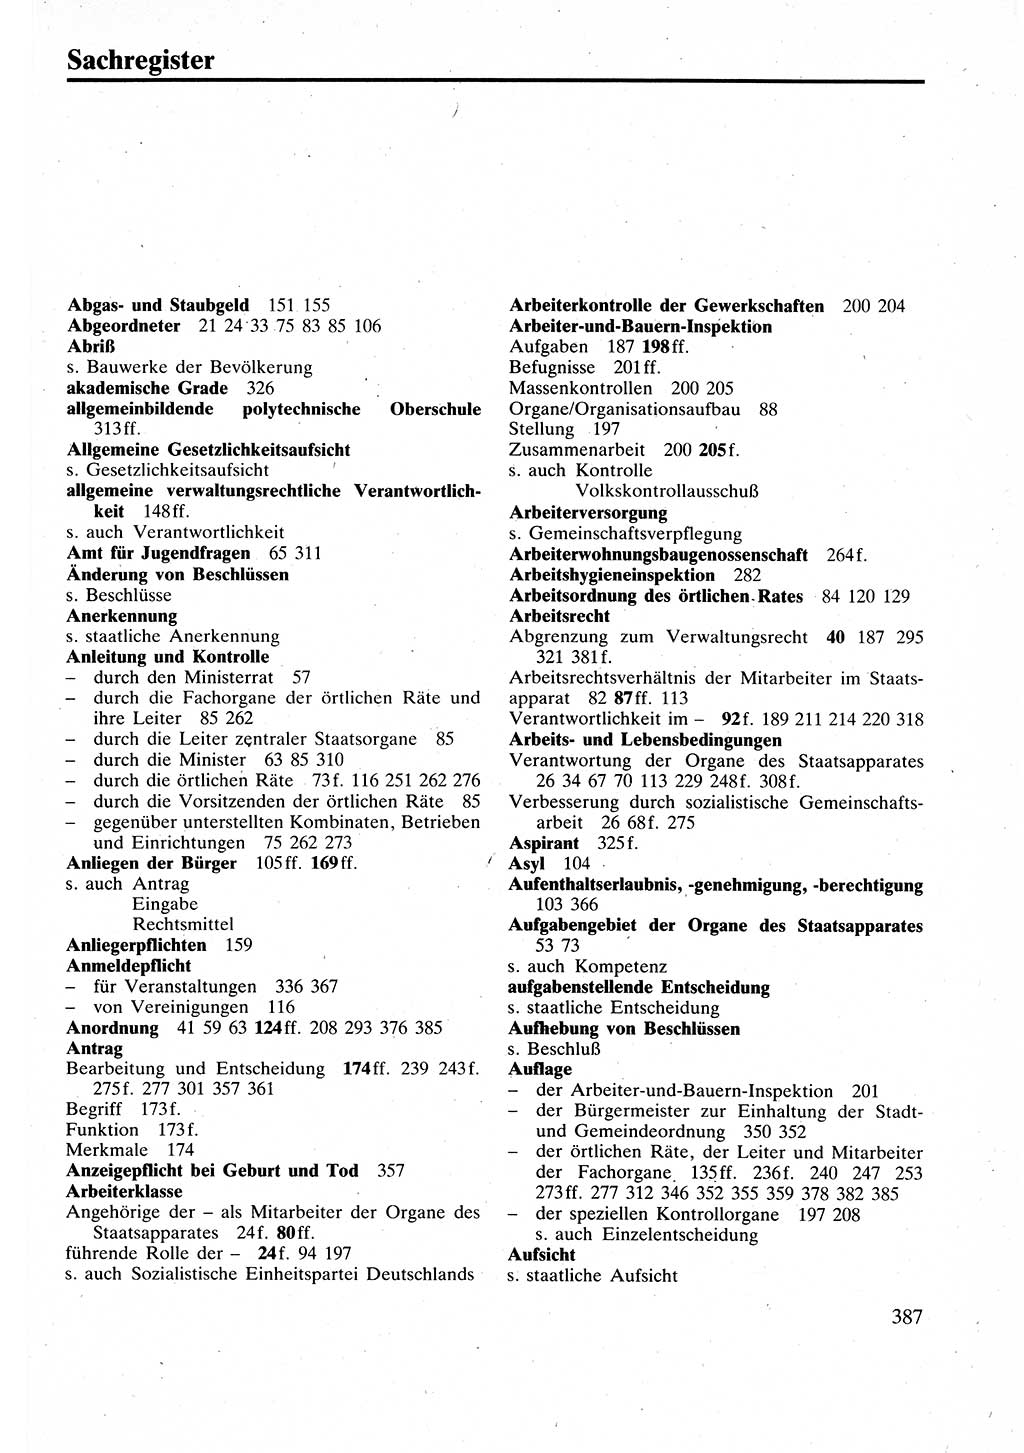 Verwaltungsrecht [Deutsche Demokratische Republik (DDR)], Lehrbuch 1988, Seite 387 (Verw.-R. DDR Lb. 1988, S. 387)